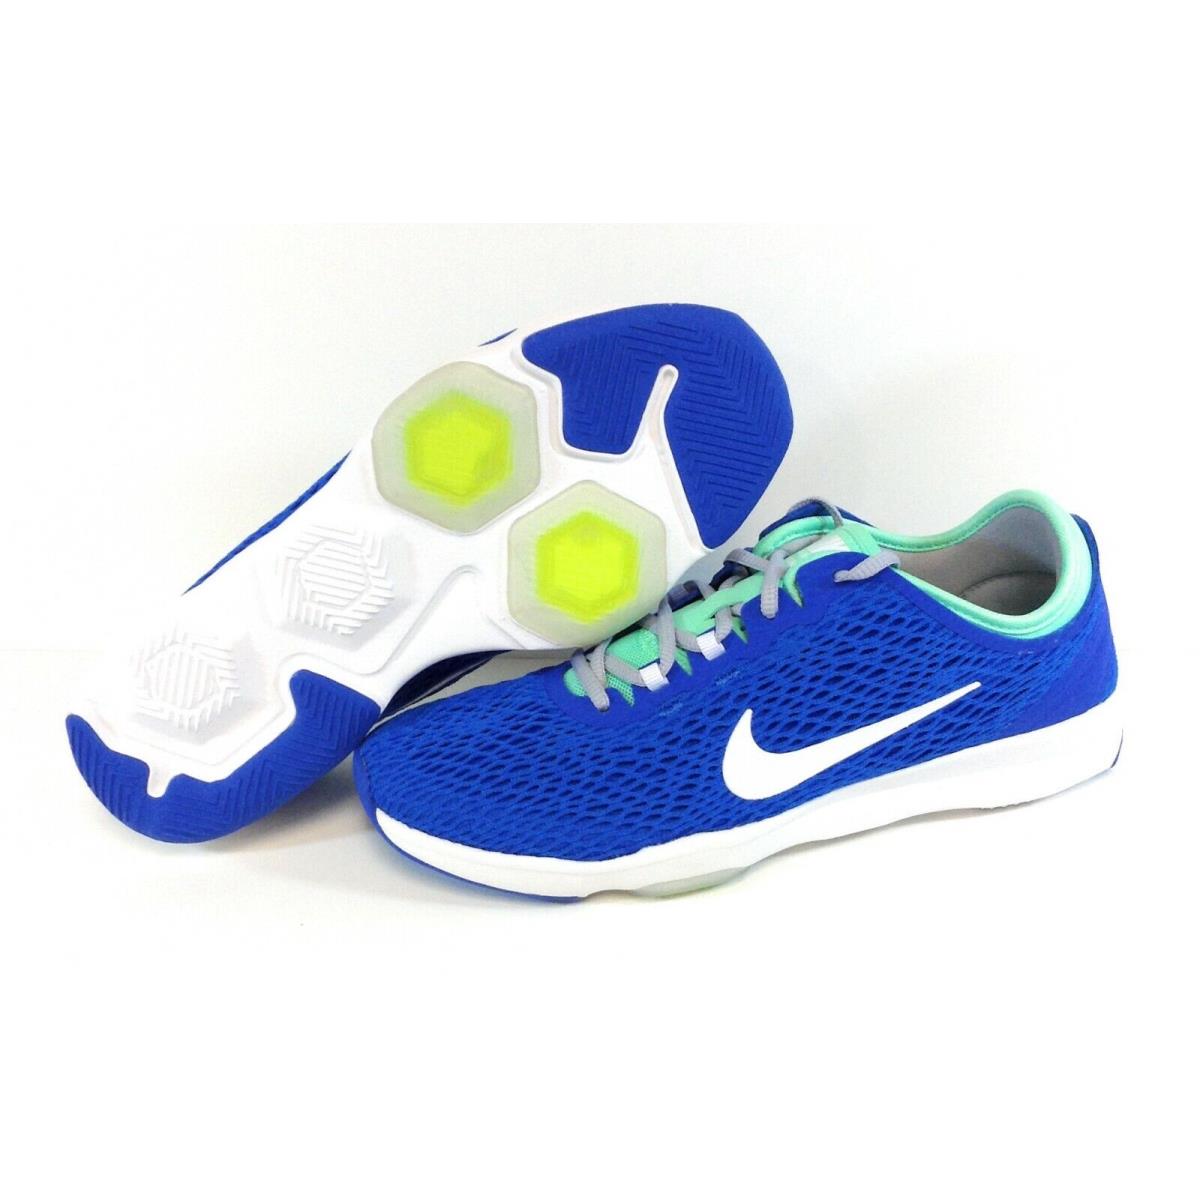 Womens Nike Zoom Fit 704658 401 Soar Blue White 2015 Deadstock Sneakers Shoes